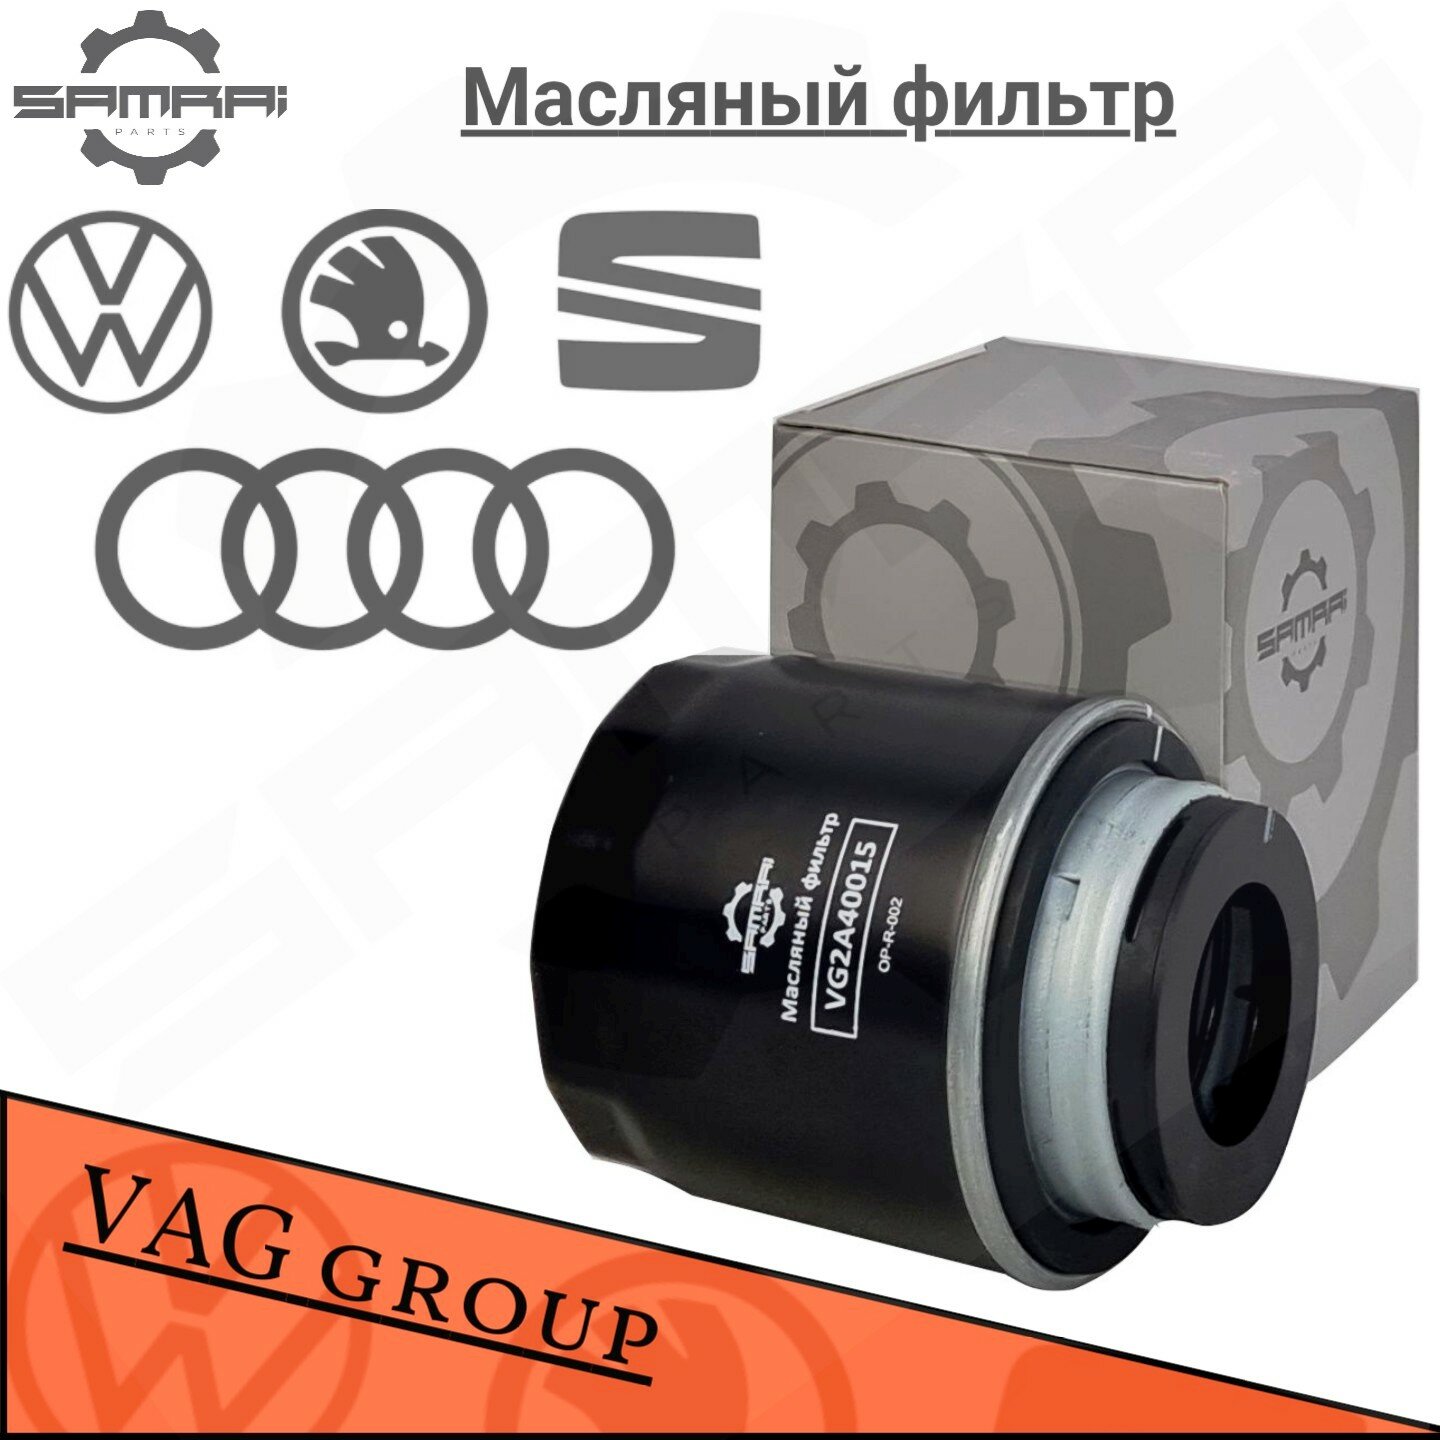 Масляный фильтр Samrai Parts для Audi, Volkswagen, Skoda VG2A40015, 03C 115 561 B, W 712/93, 51004A2